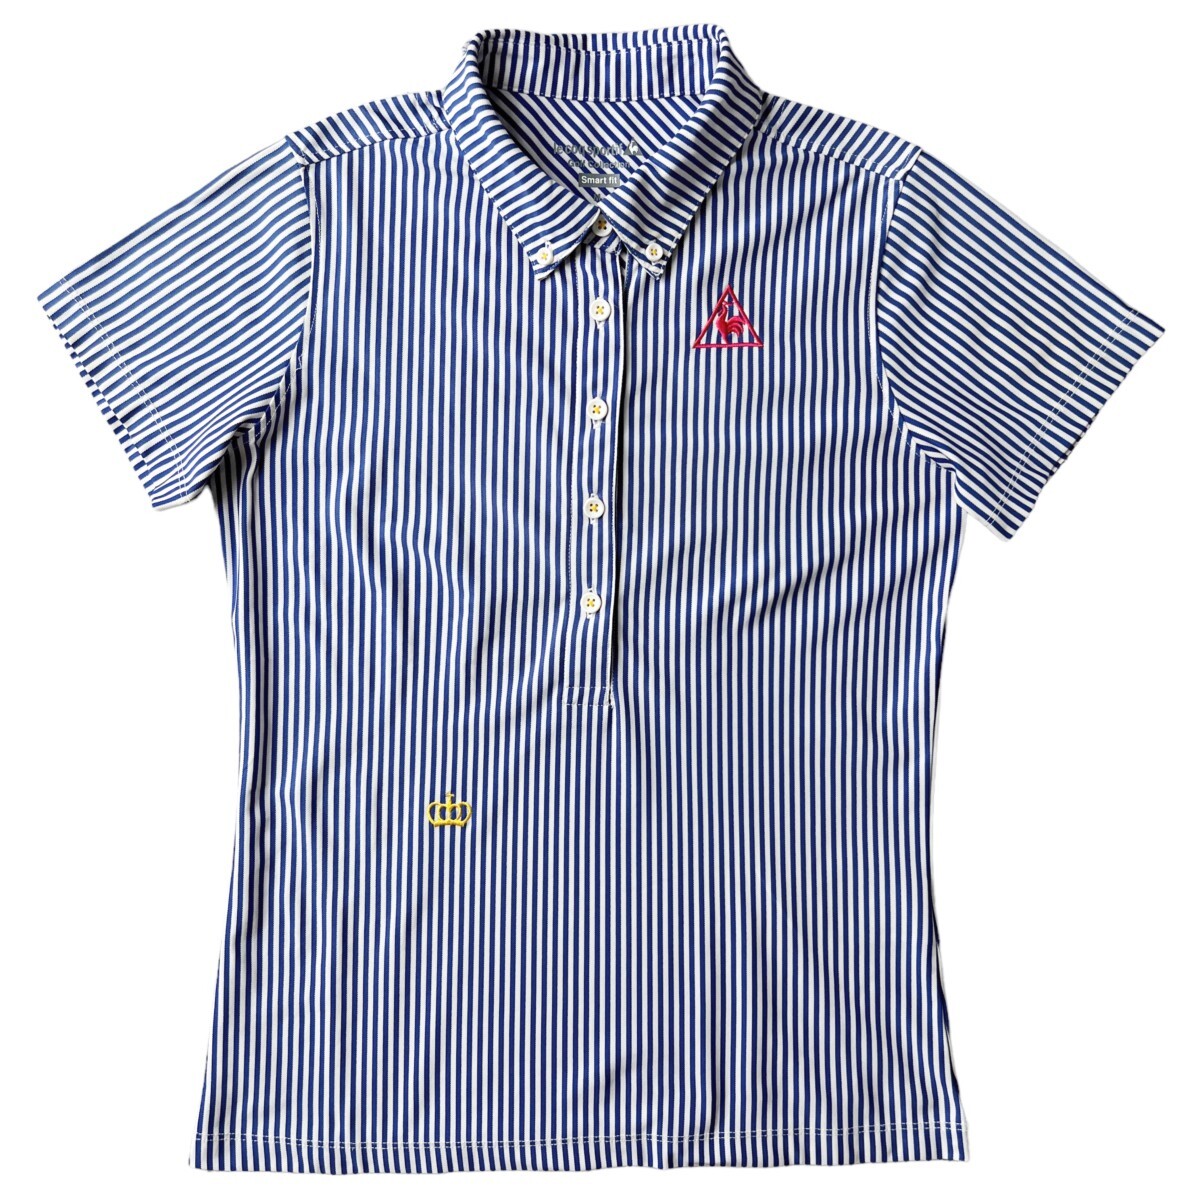  прекрасный товар le coq sportif GOLF Le Coq Golf / короткий рукав кнопка down рубашка-поло / M размер женский / белый синий полоса рисунок Golf одежда 